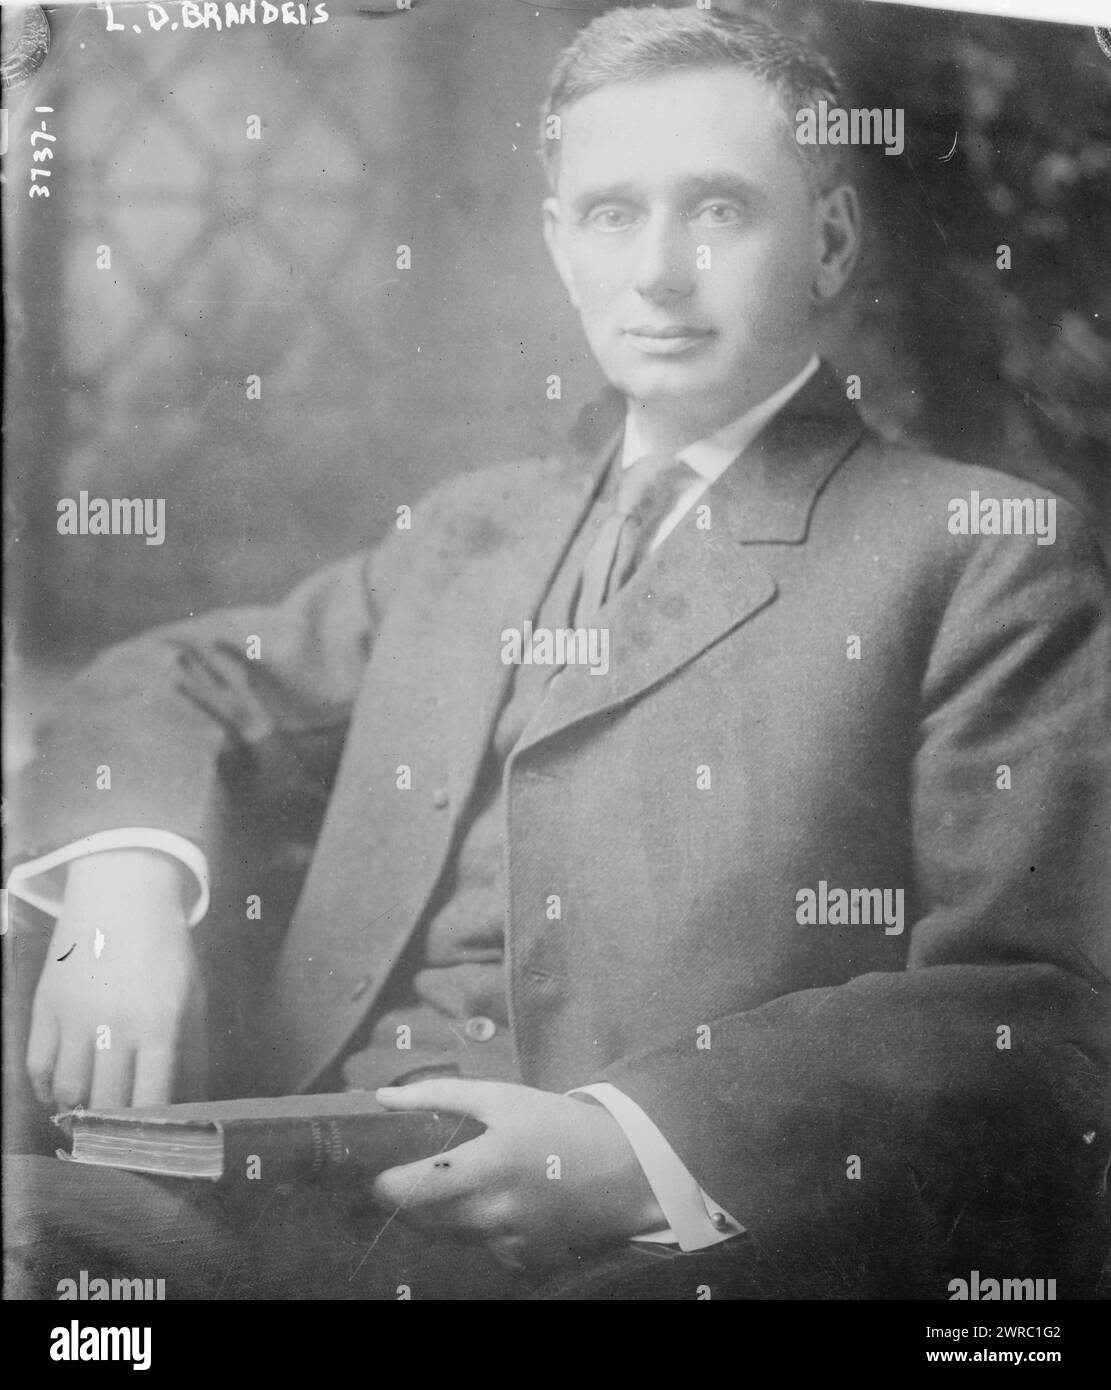 L.D. Brandeis, la fotografia mostra Louis Dembitz Brandeis, un avvocato americano e giudice associato della Corte Suprema degli Stati Uniti. 1910 e ca. 1920, Glass negative, 1 negativo: Glass Foto Stock